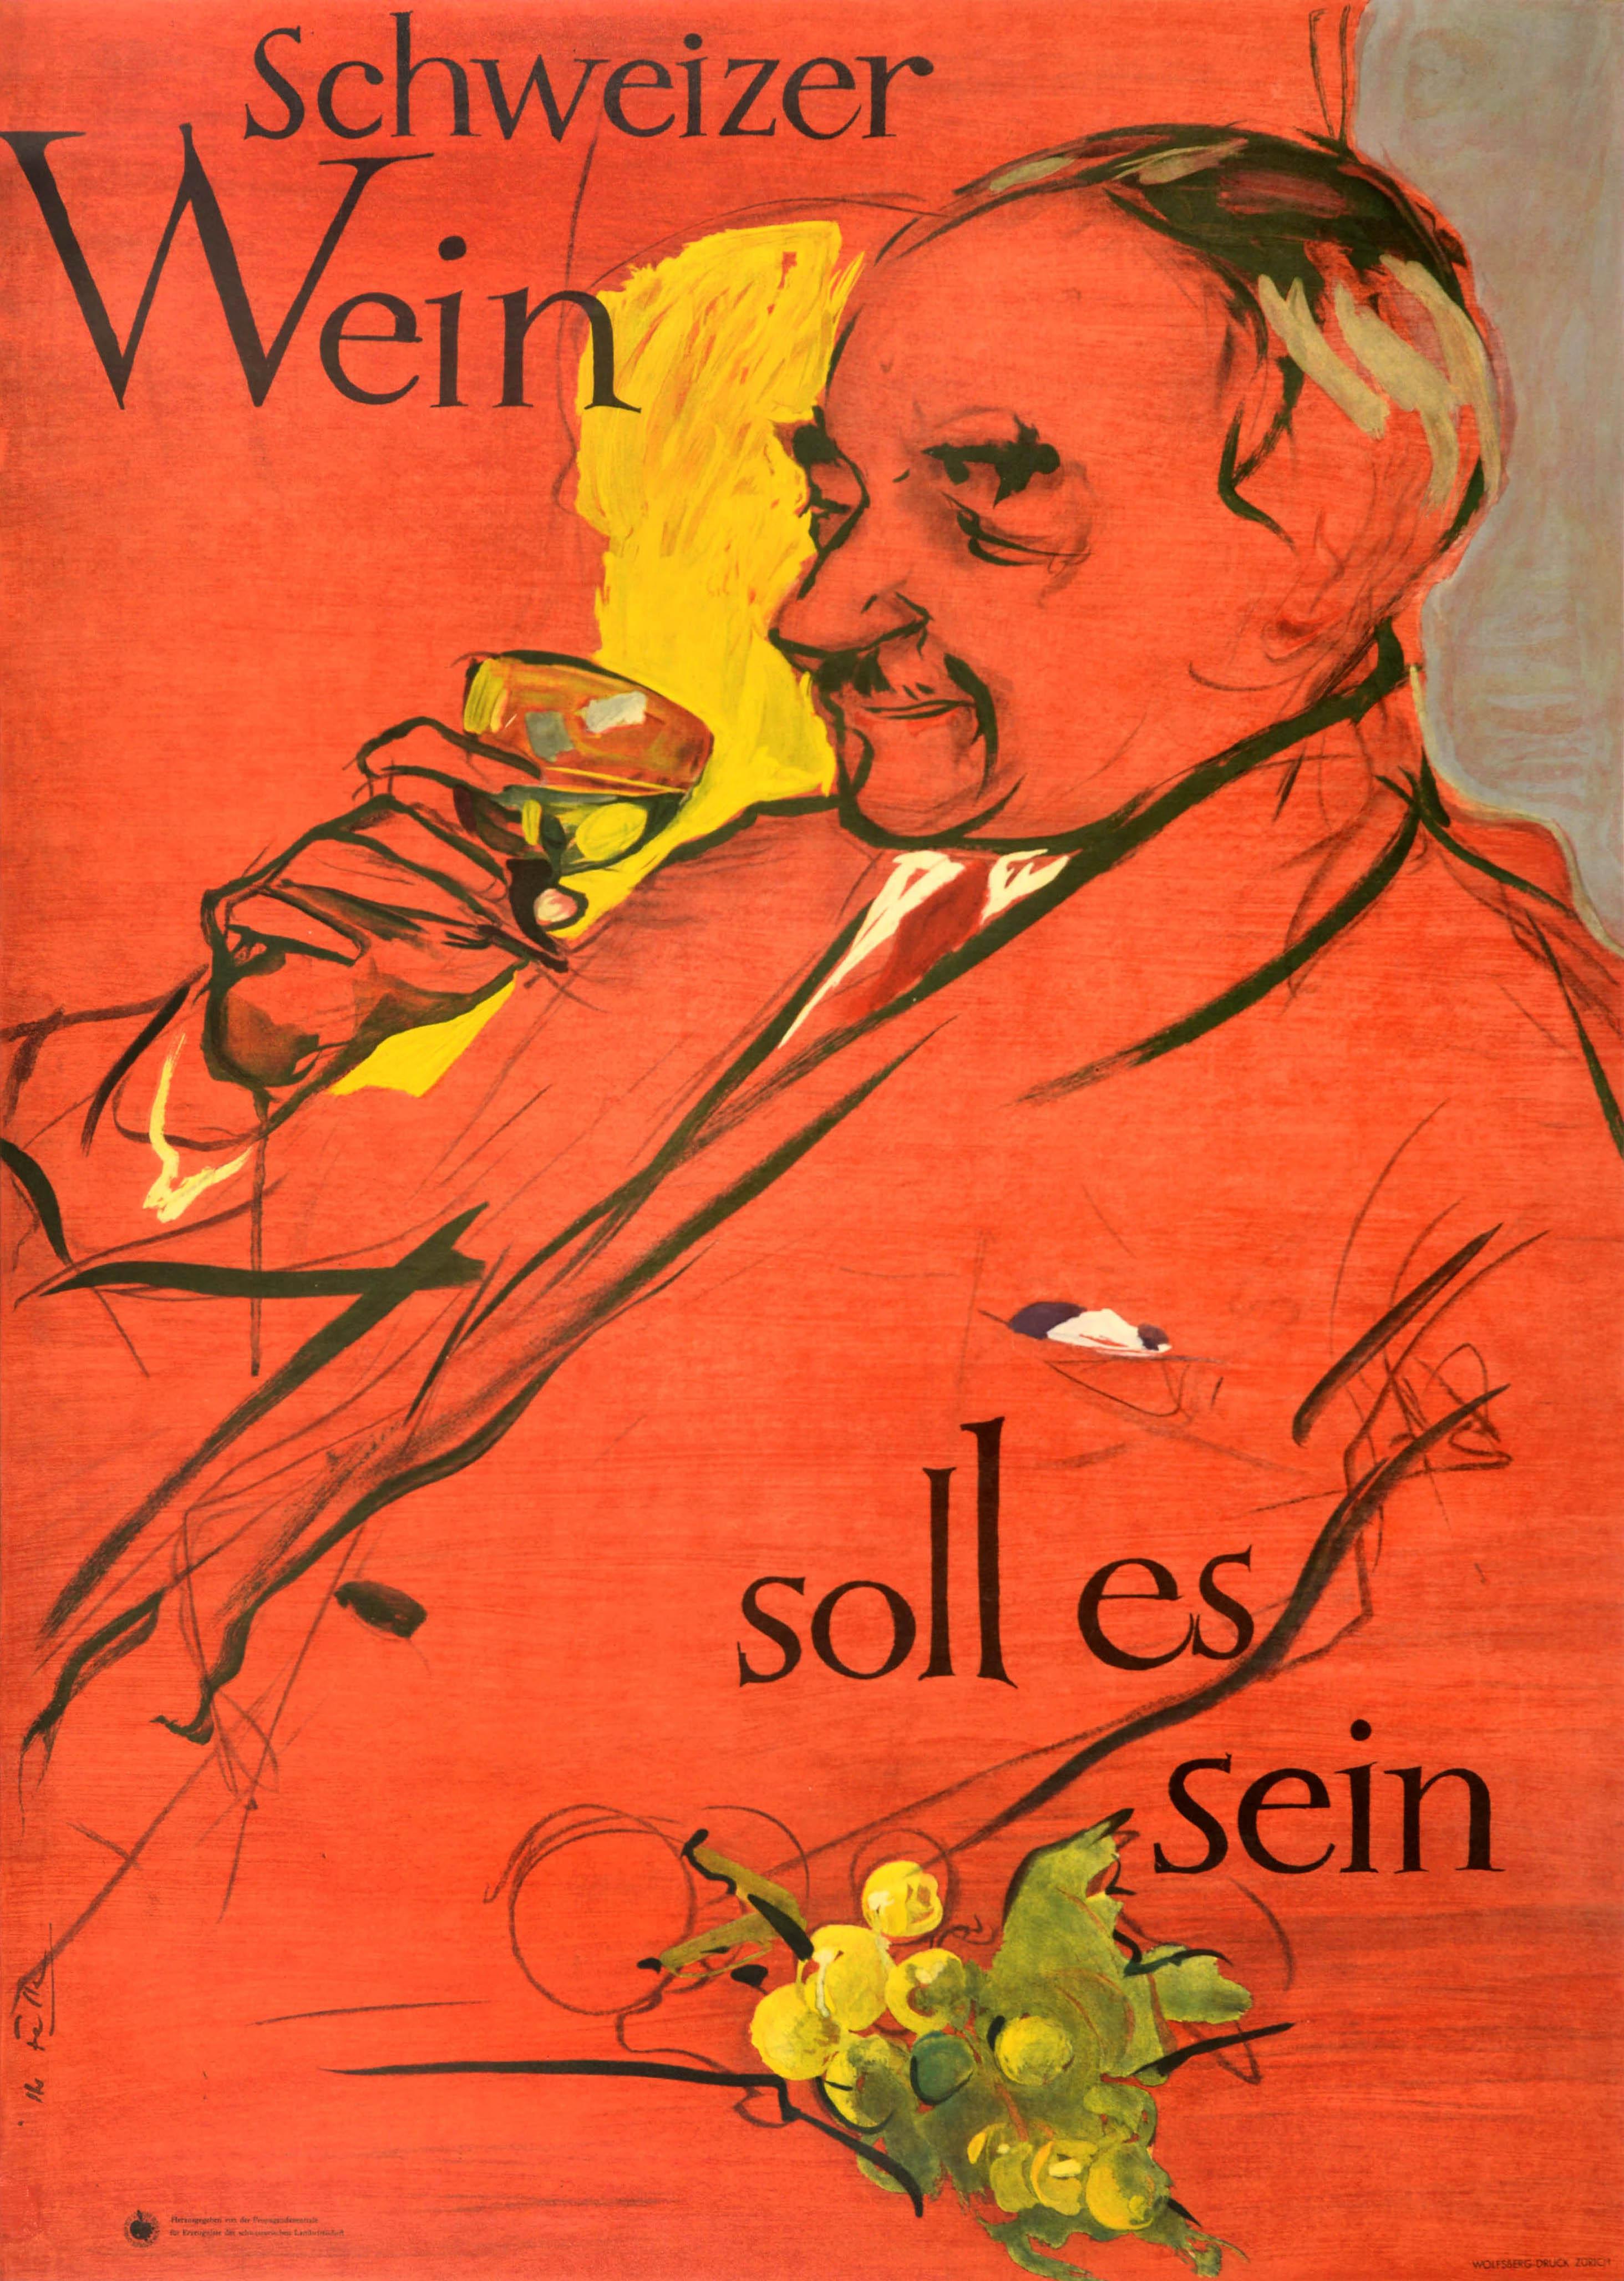 Hans Falk Print - Original Vintage Swiss Wine Poster Schweizer Wein Soll Es Sein Switzerland Drink